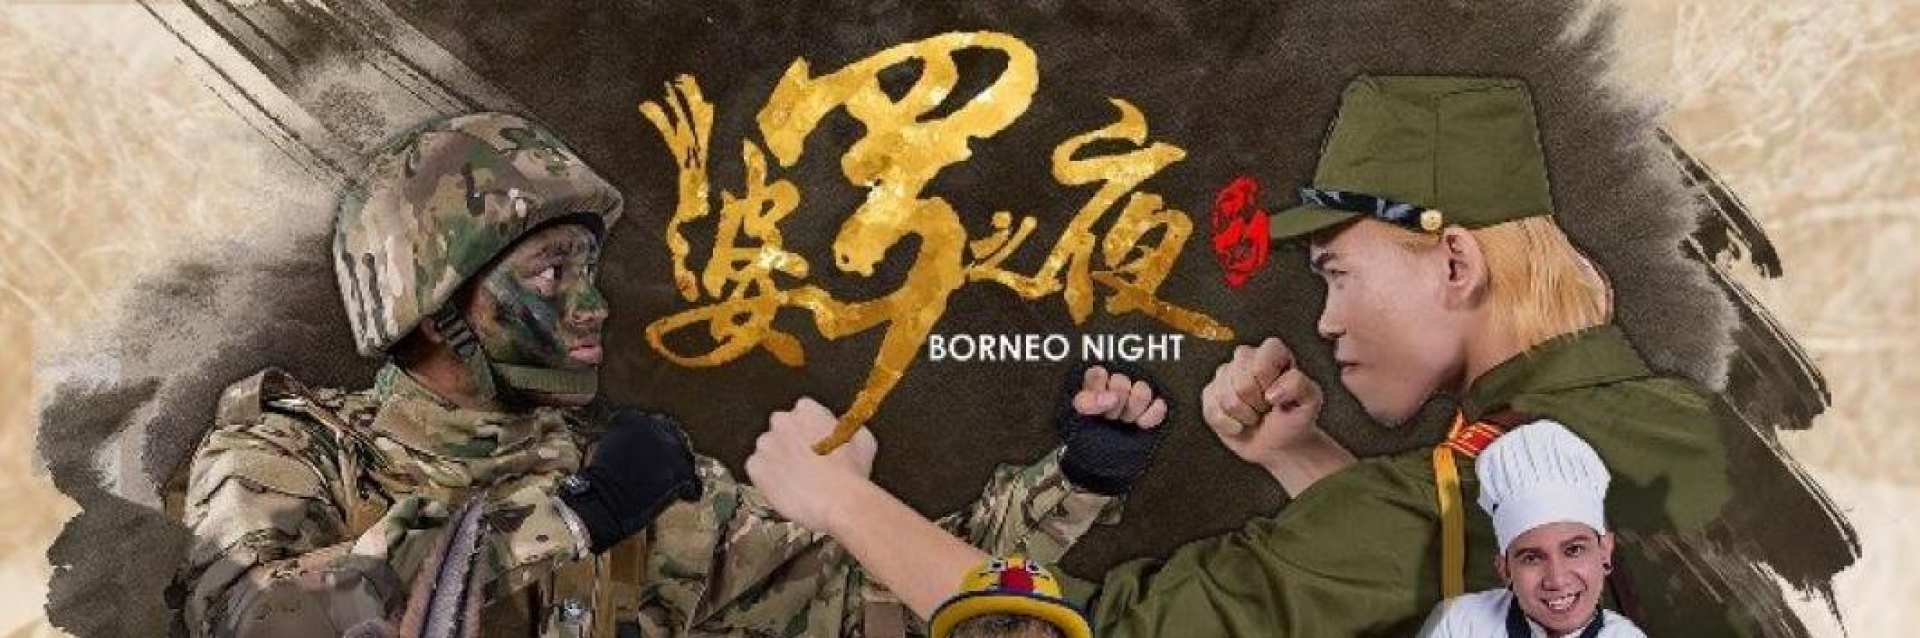  【亞庇精彩大型舞台劇】婆羅洲之夜 Borneo Night 